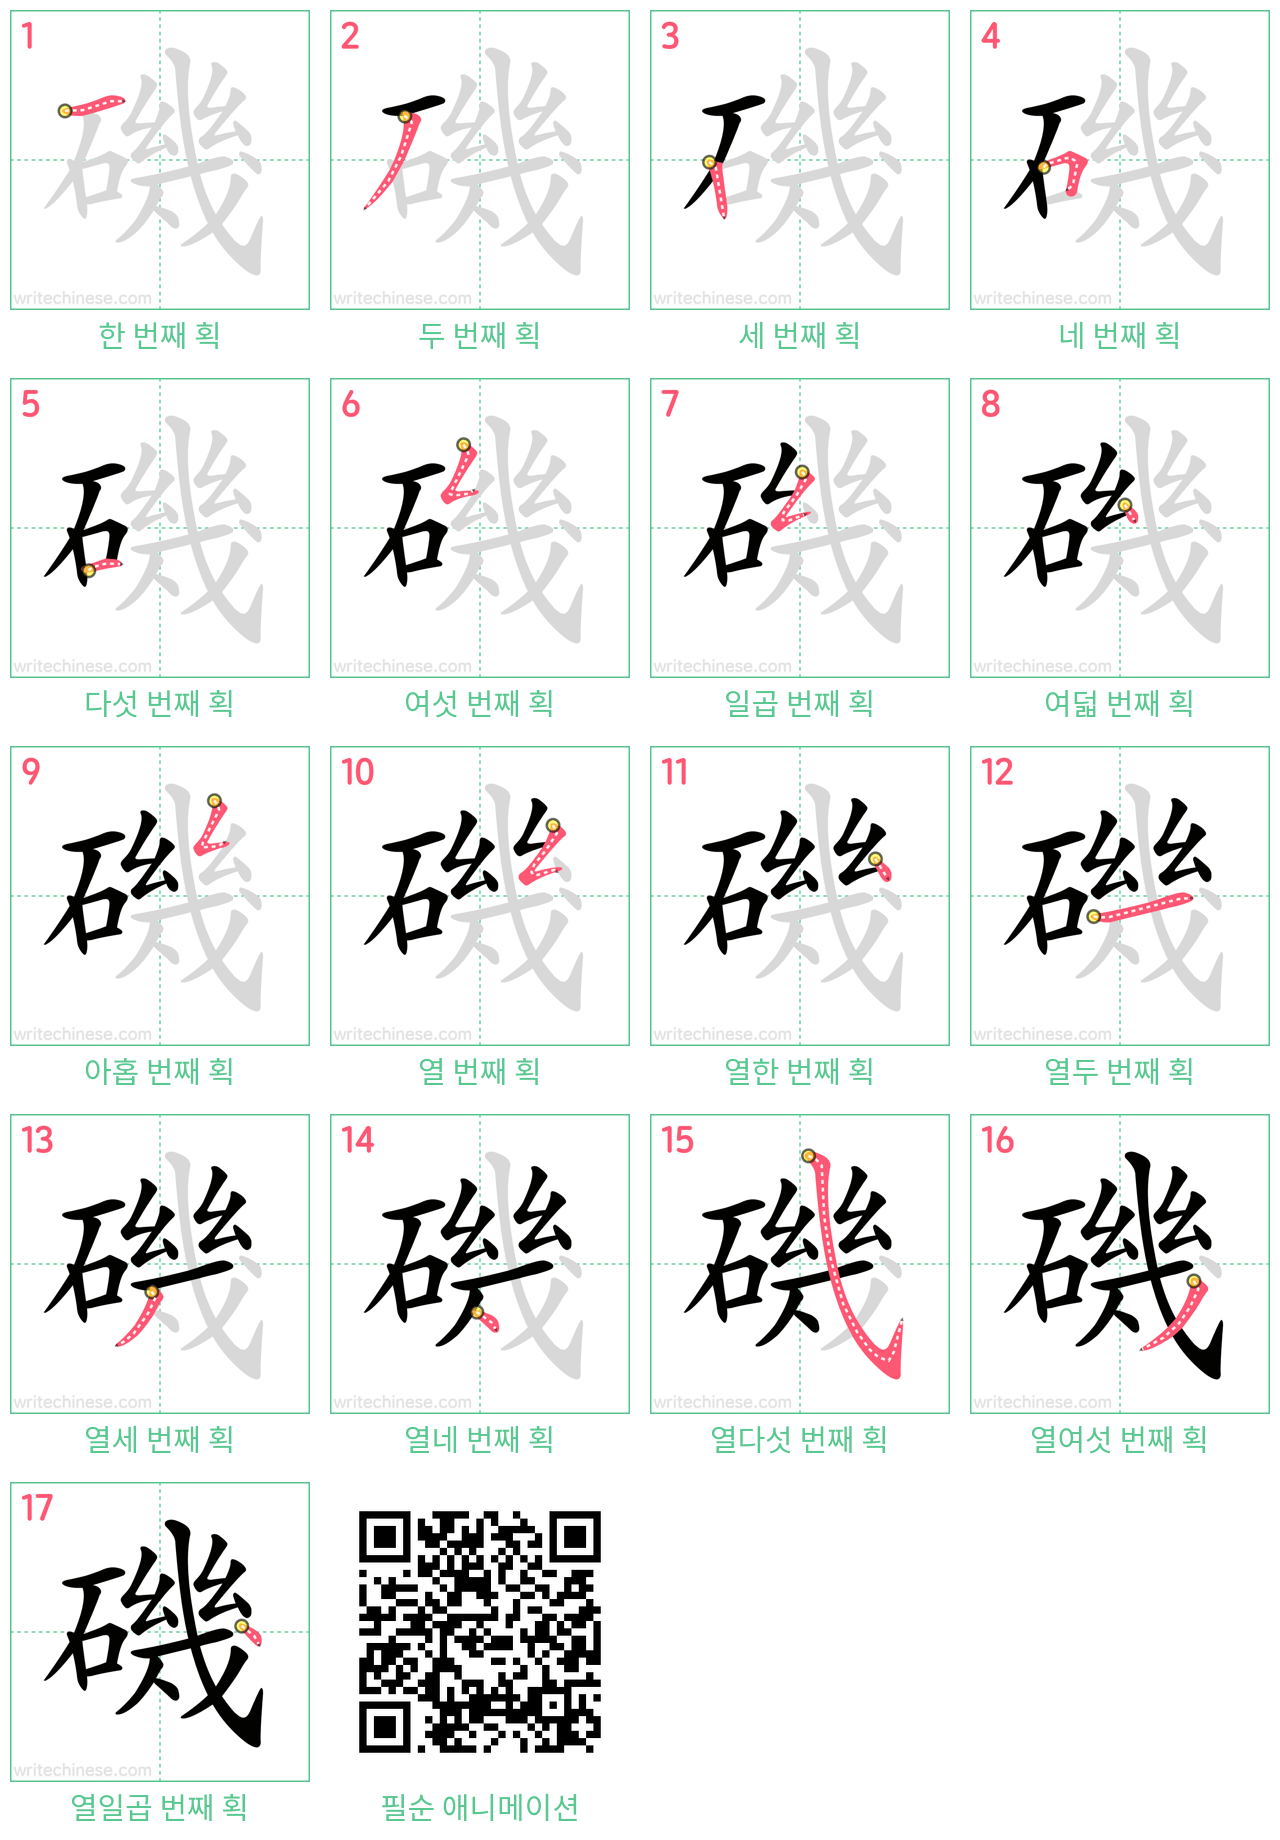 磯 step-by-step stroke order diagrams